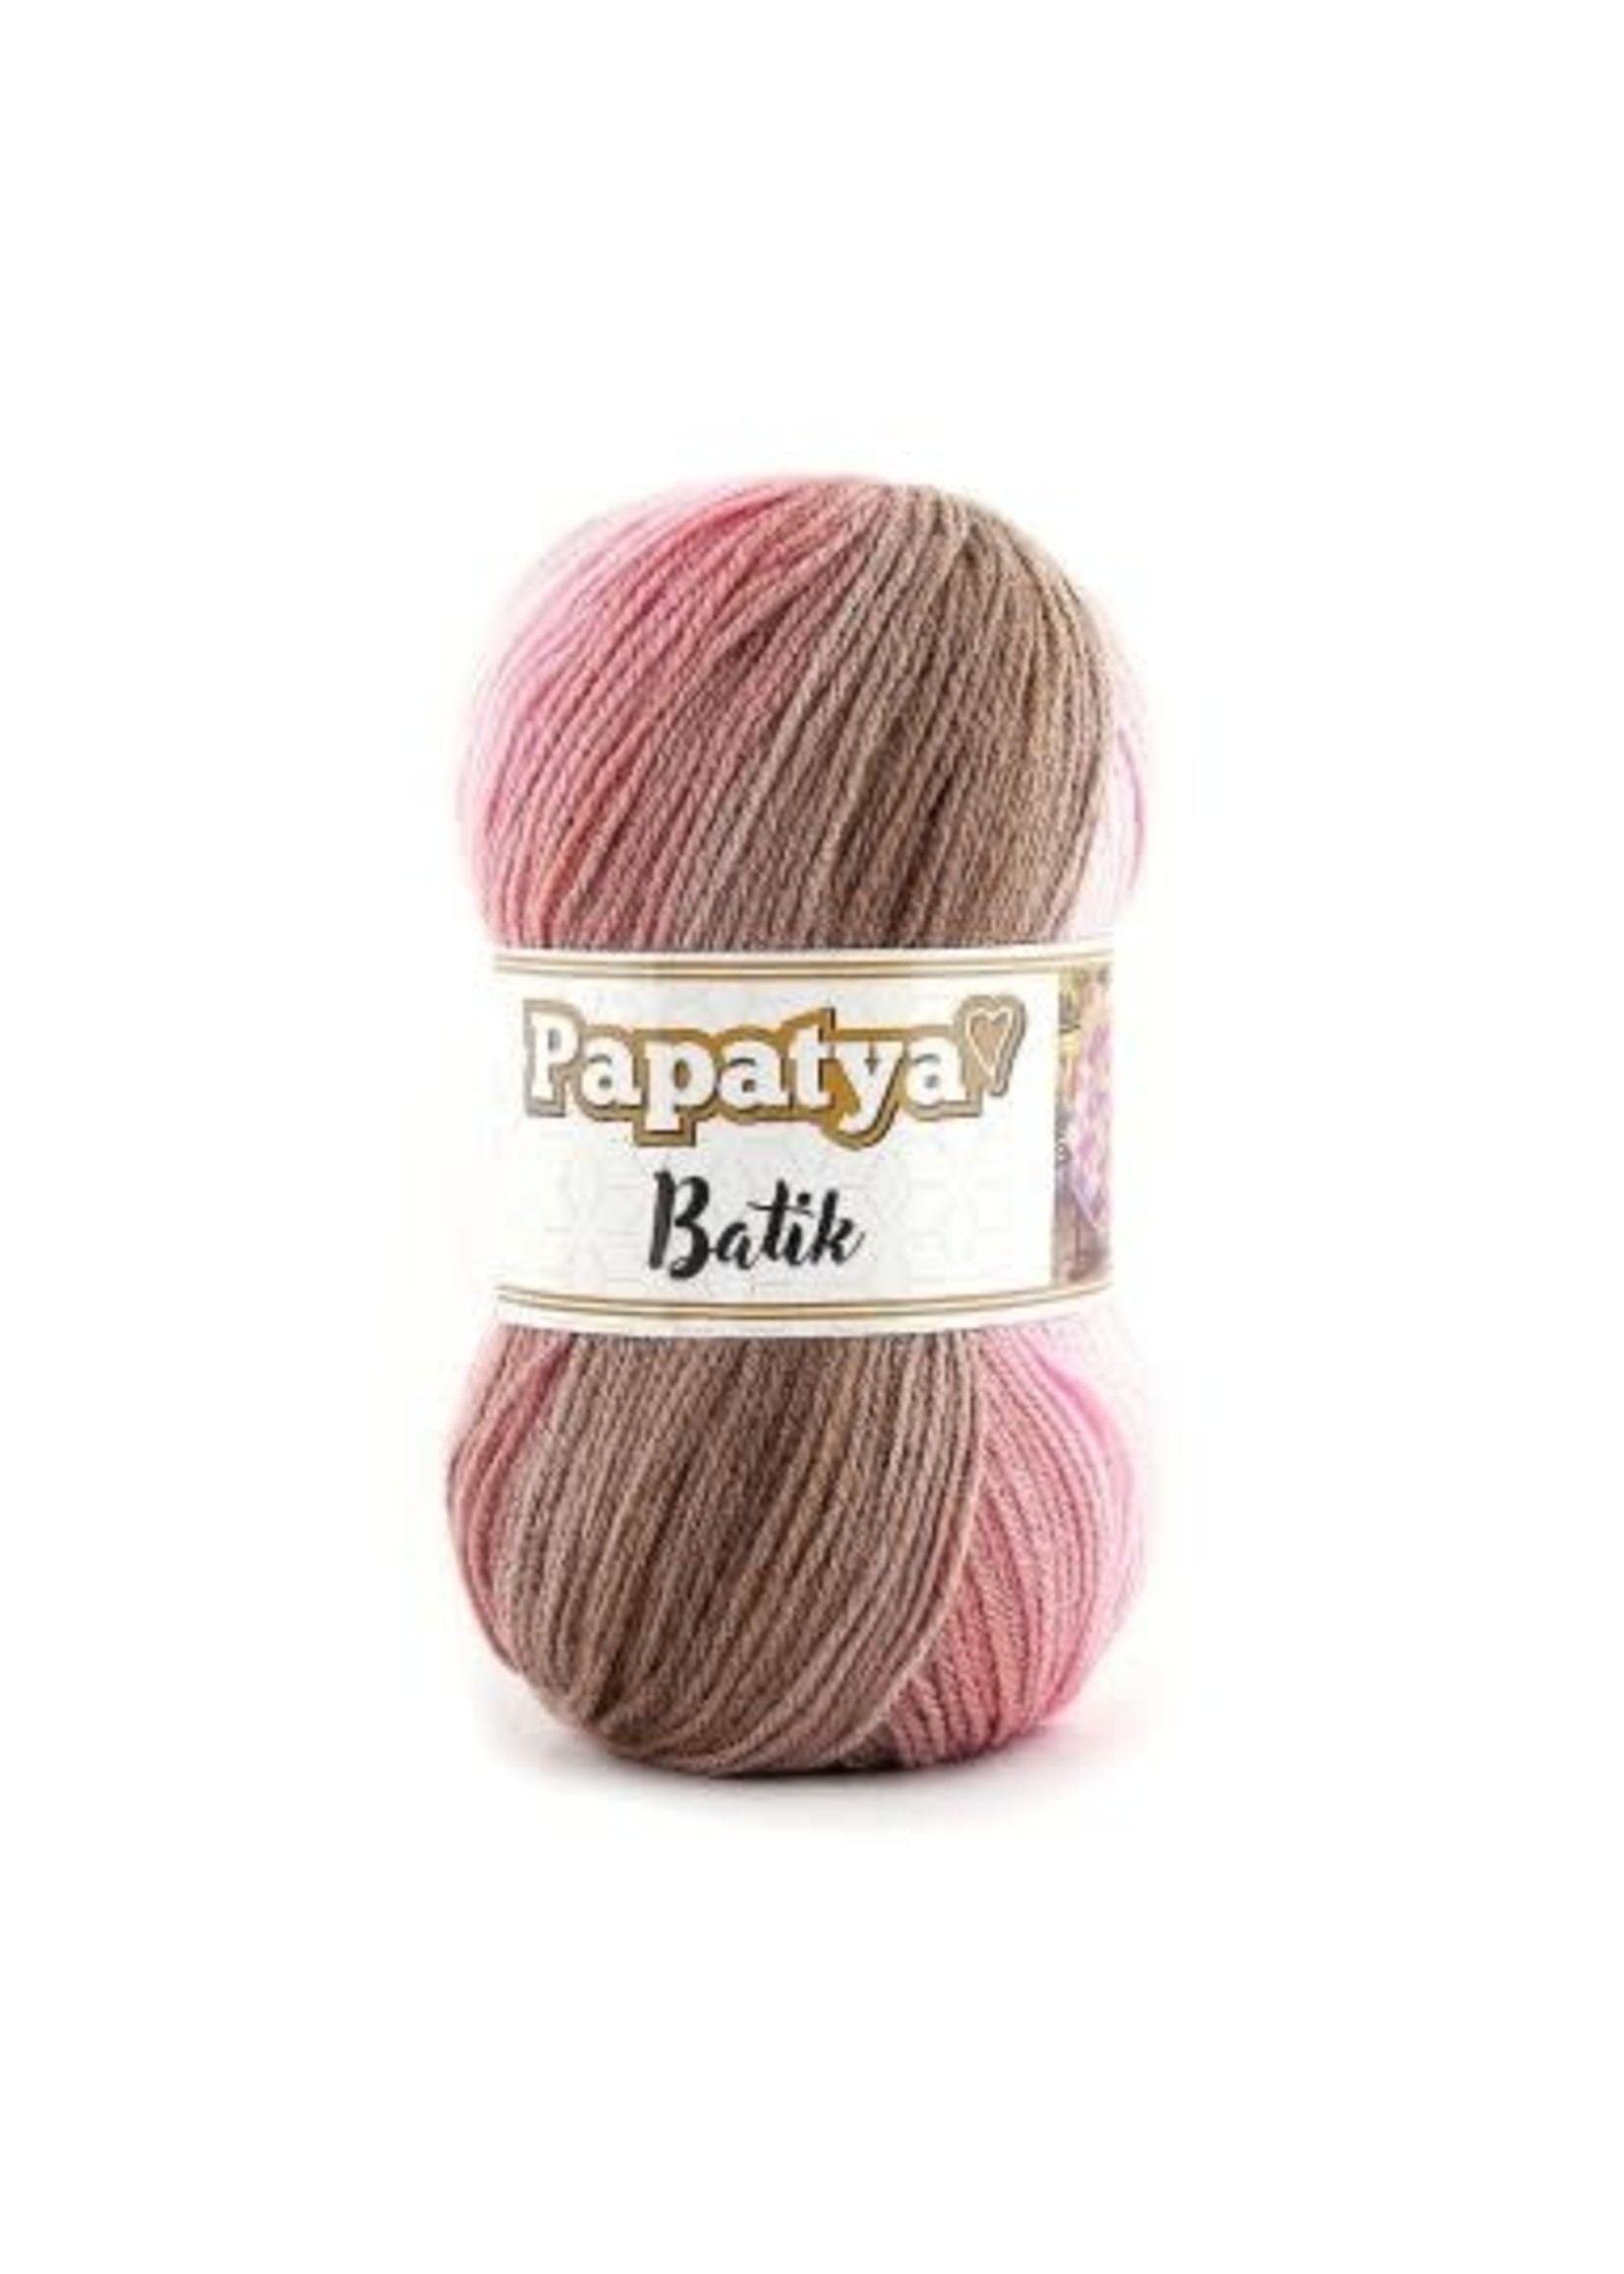 Papatya Papatya Batik - 25 Pink Dream